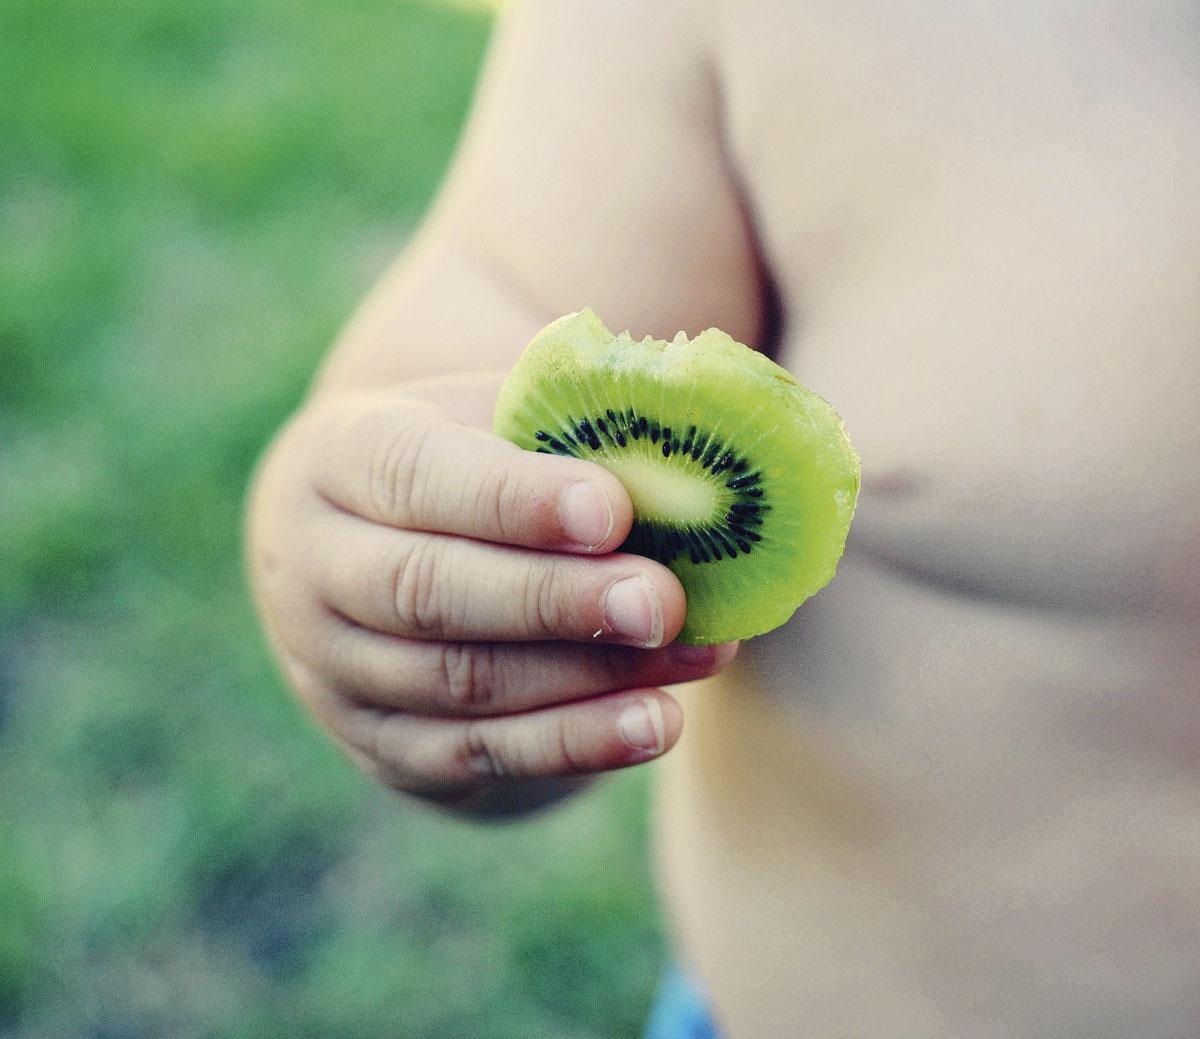 Voedselallergieën die niet het gevolg zijn van een andere allergie - primaire voedselallergieën dus - duiken vooral op jonge leeftijd op. De klassieke toppers zijn nog altijd koemelk- en ei-allergie. 'Maar er komen ook 'nieuwe' allergieën bij', zegt Ebo. 'Eenvoudigweg omdat het voedingspatroon verandert. Vroeger zagen we zelden jonge kinderen met een kiwi-allergie, omdat in de fruitpap van toen zelden kiwi zat.'